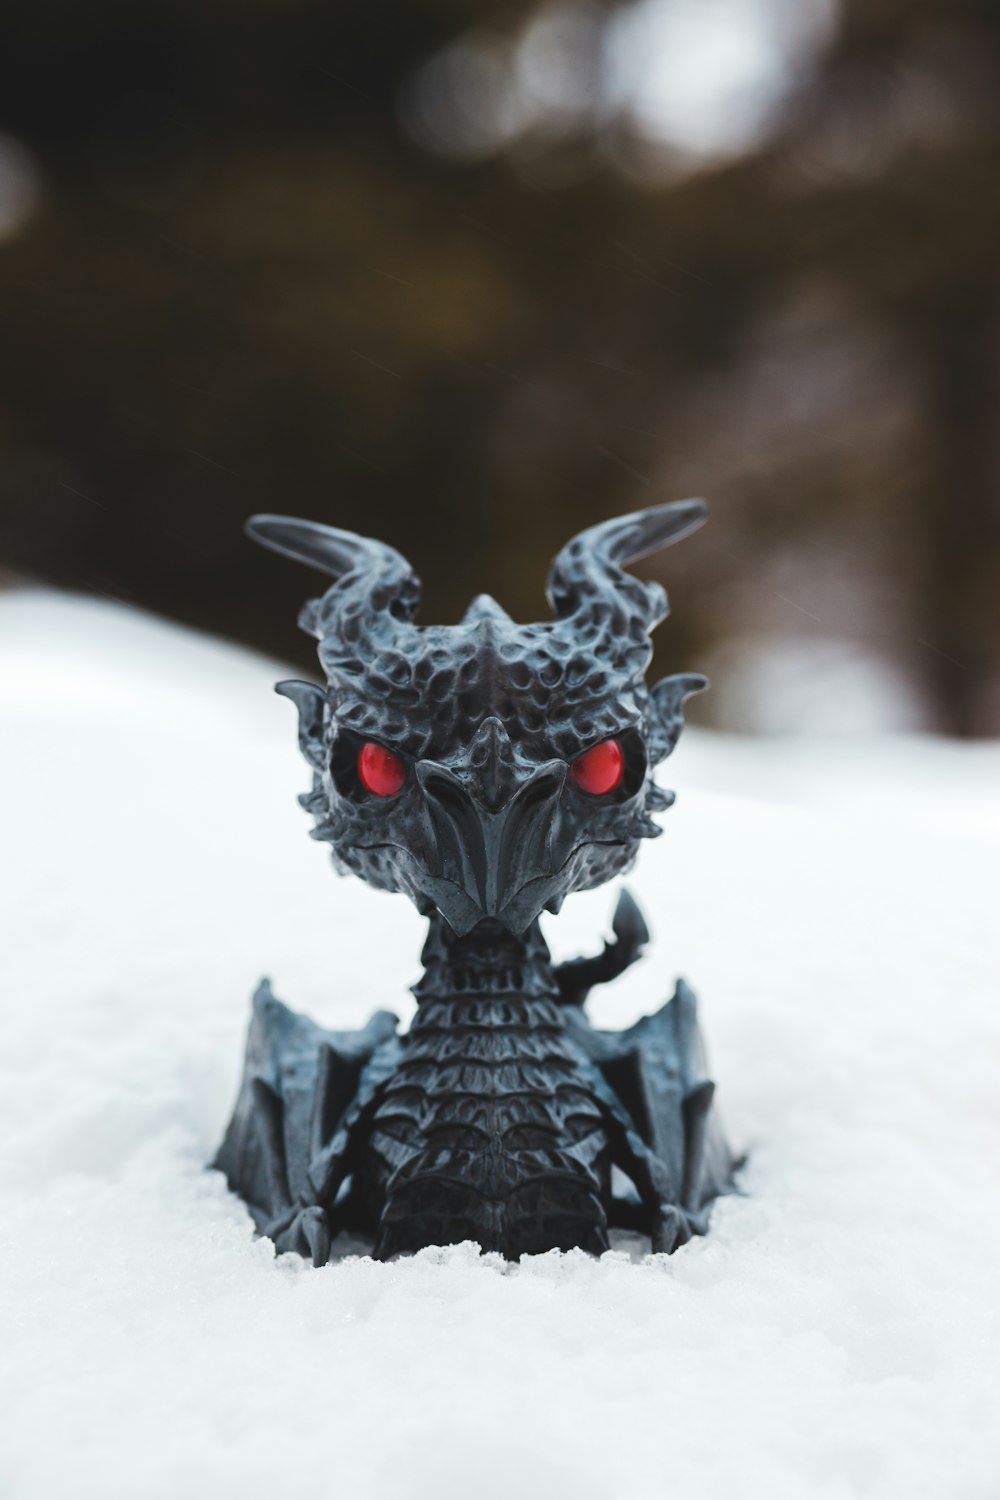 black dragon figurine on white textile